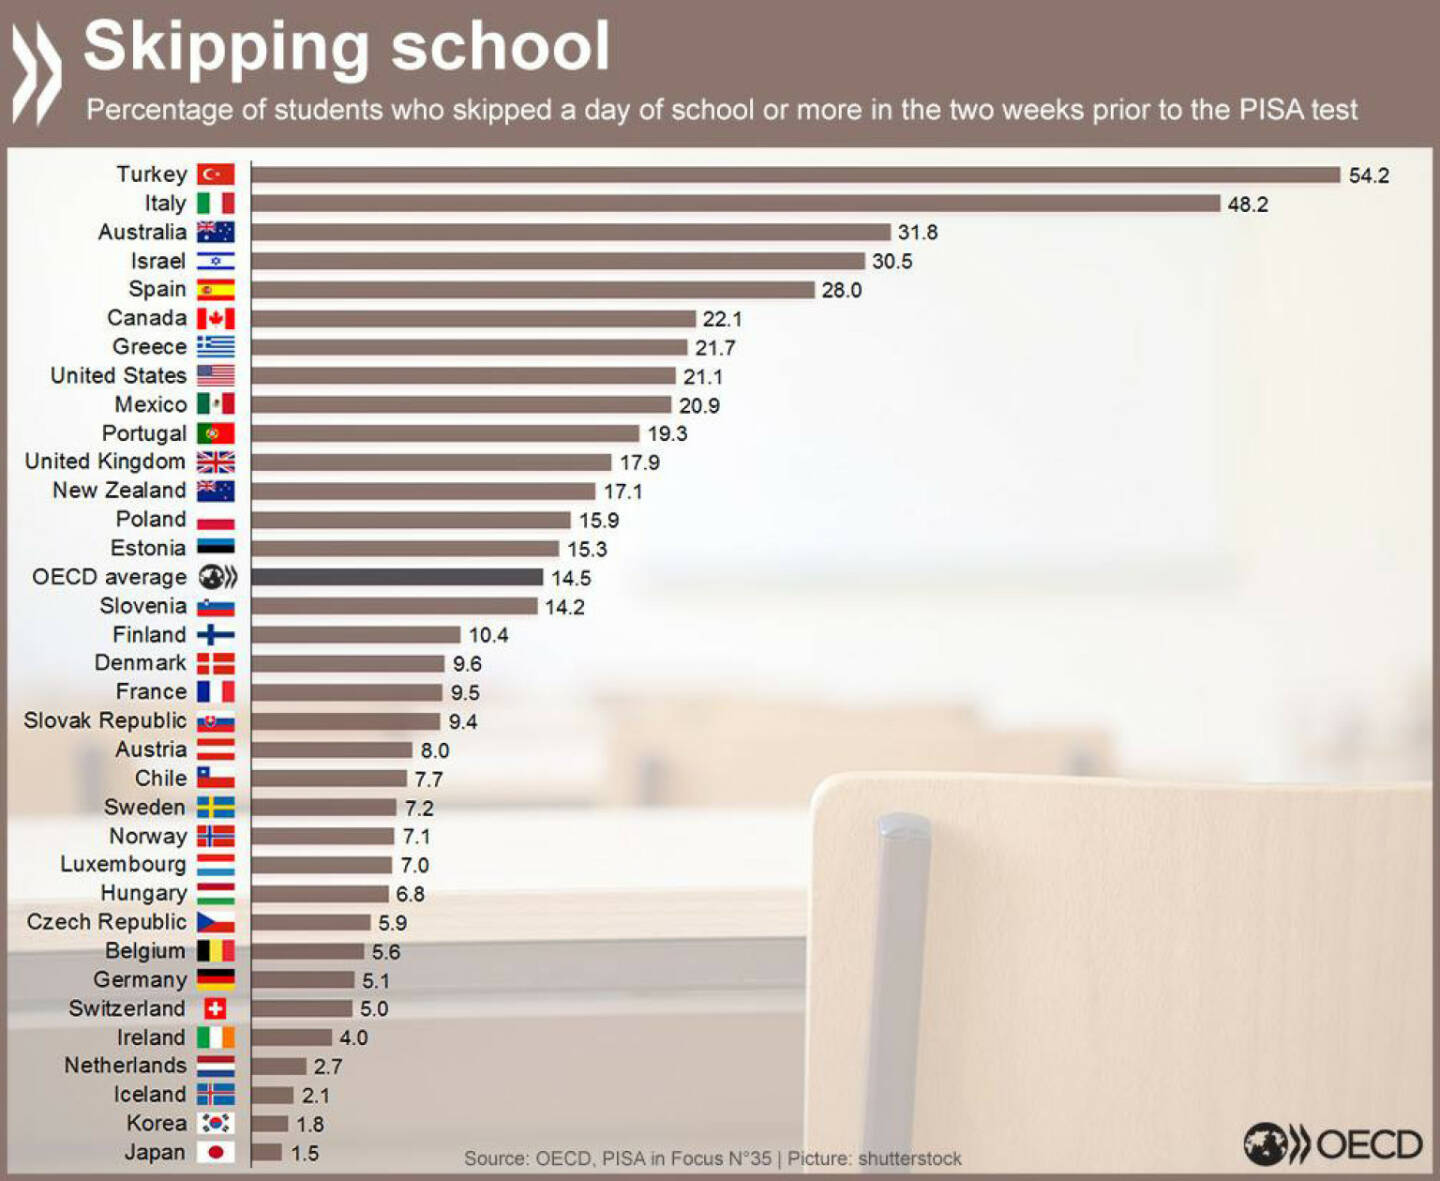 Welches Land hat die meisten Schulschwänzer? Infos zur Korrelation zwischen schwänzen und Schülerleistung im PISA-Test gibt es unter http://bit.ly/1gy3ZKW